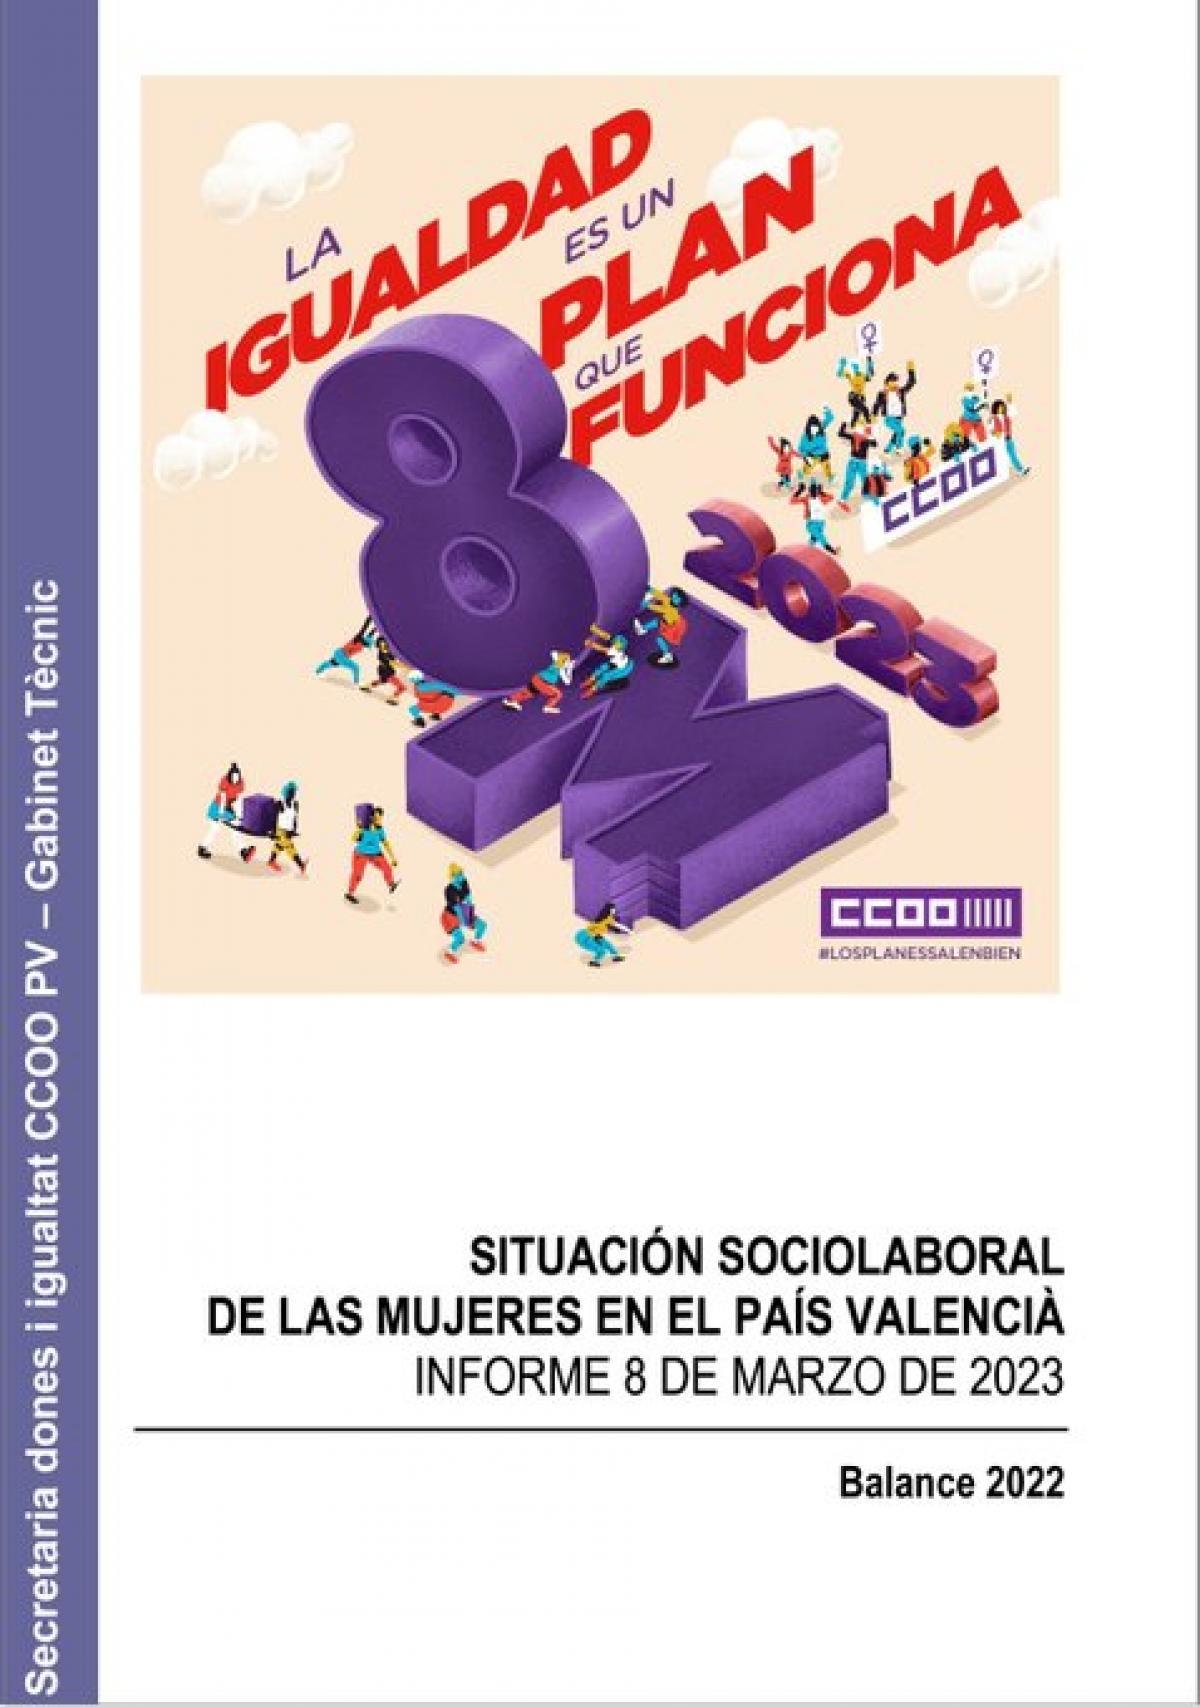 Situación sociolaboral de las mujeres en el País Valencià. Informe 8 de Marzo de 2023